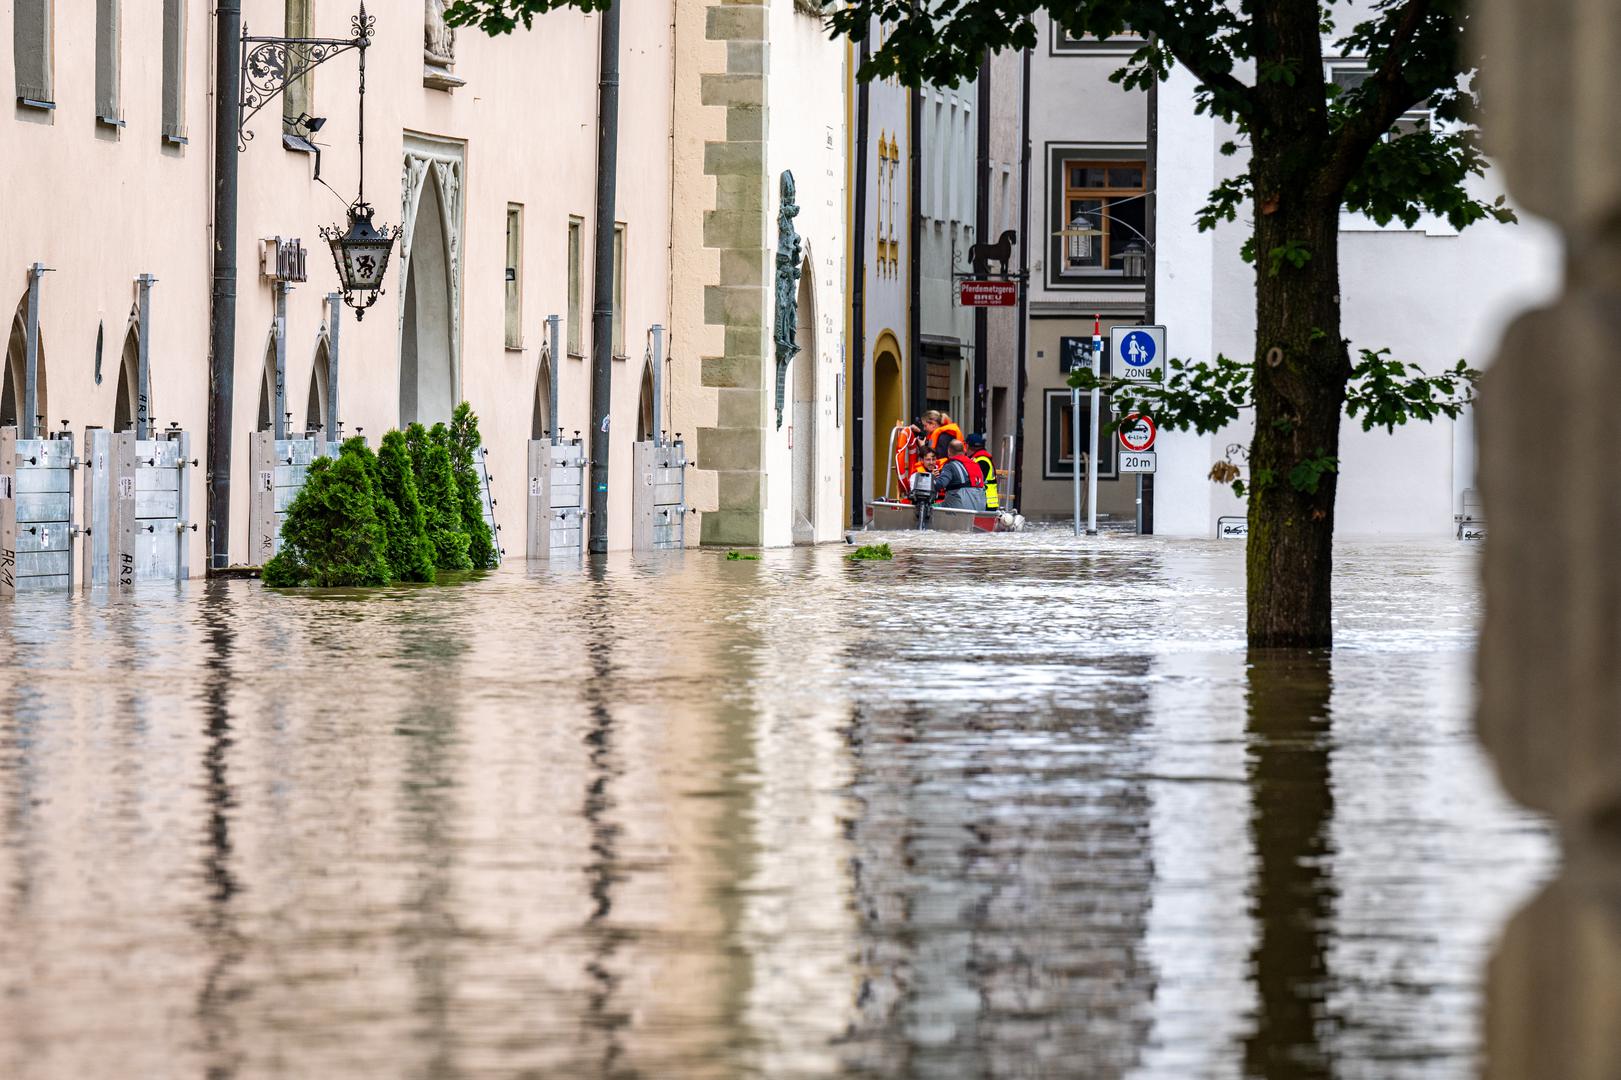 Njemačka meteorološka služba prognozirala je da više neće padati obilnije padaline. Središte zbivanja spasilačkih napora je rijeka Dunav, koja je jučer ujutro u gradu Passauu dosegla 9.6 metara, što je gotovo dvostruko više od normalne razine za ovo doba godine.